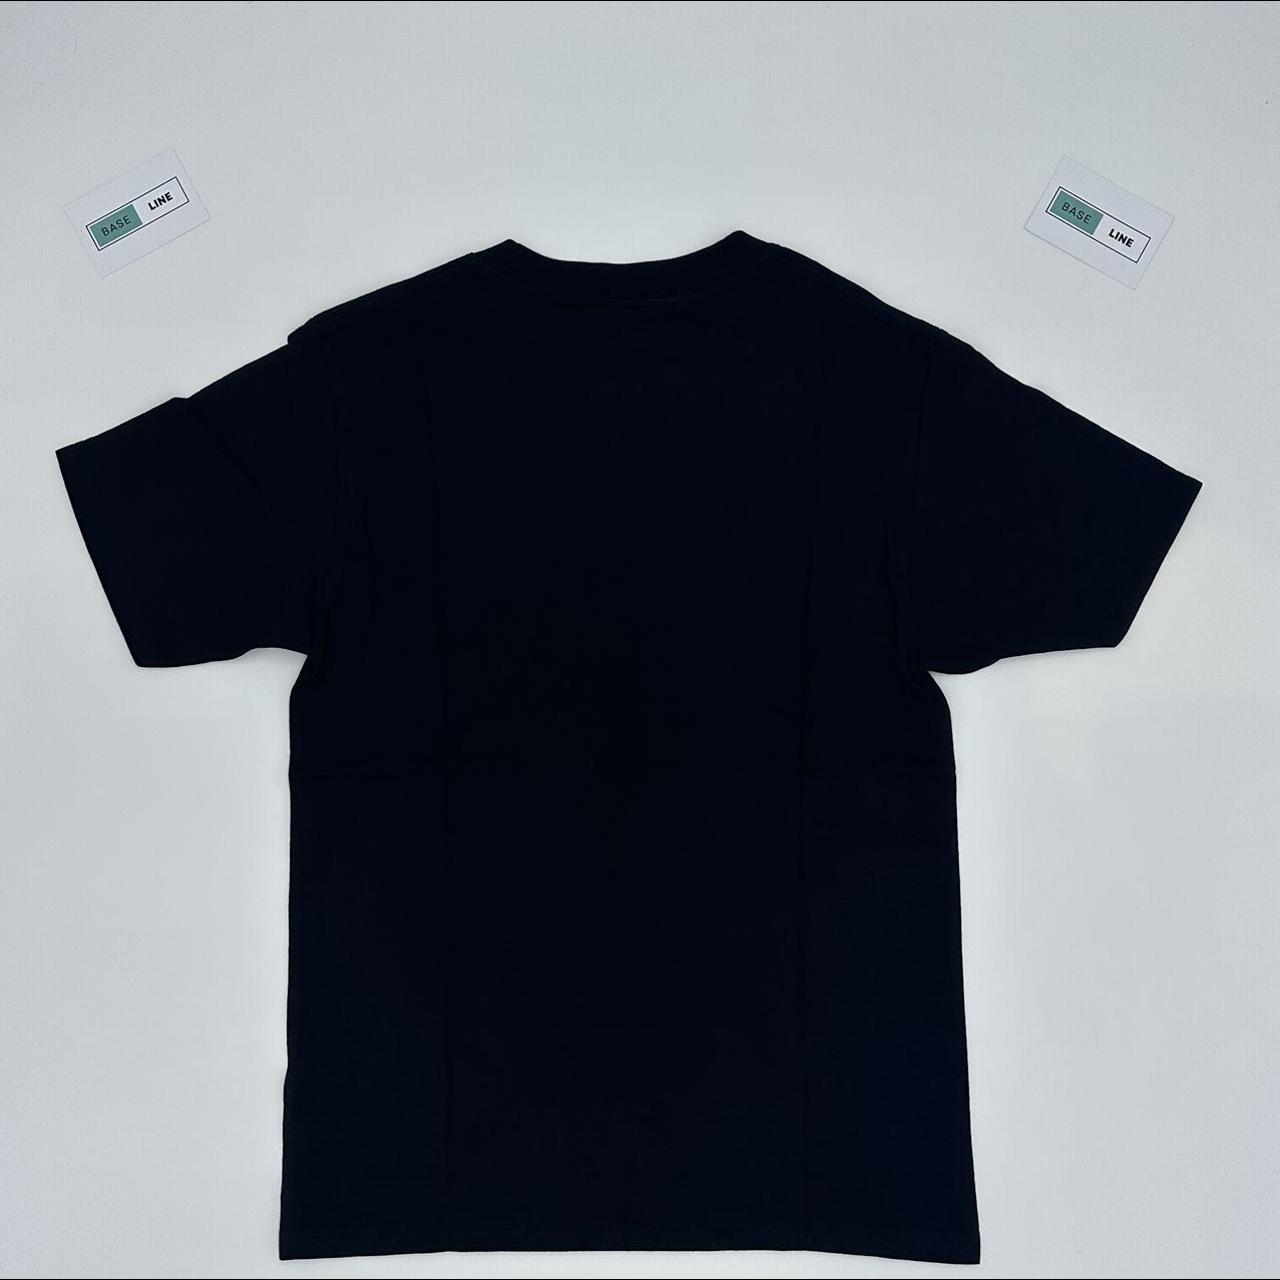 Corteiz T-Shirt - Allstarz Black - Size S & M Very... - Depop